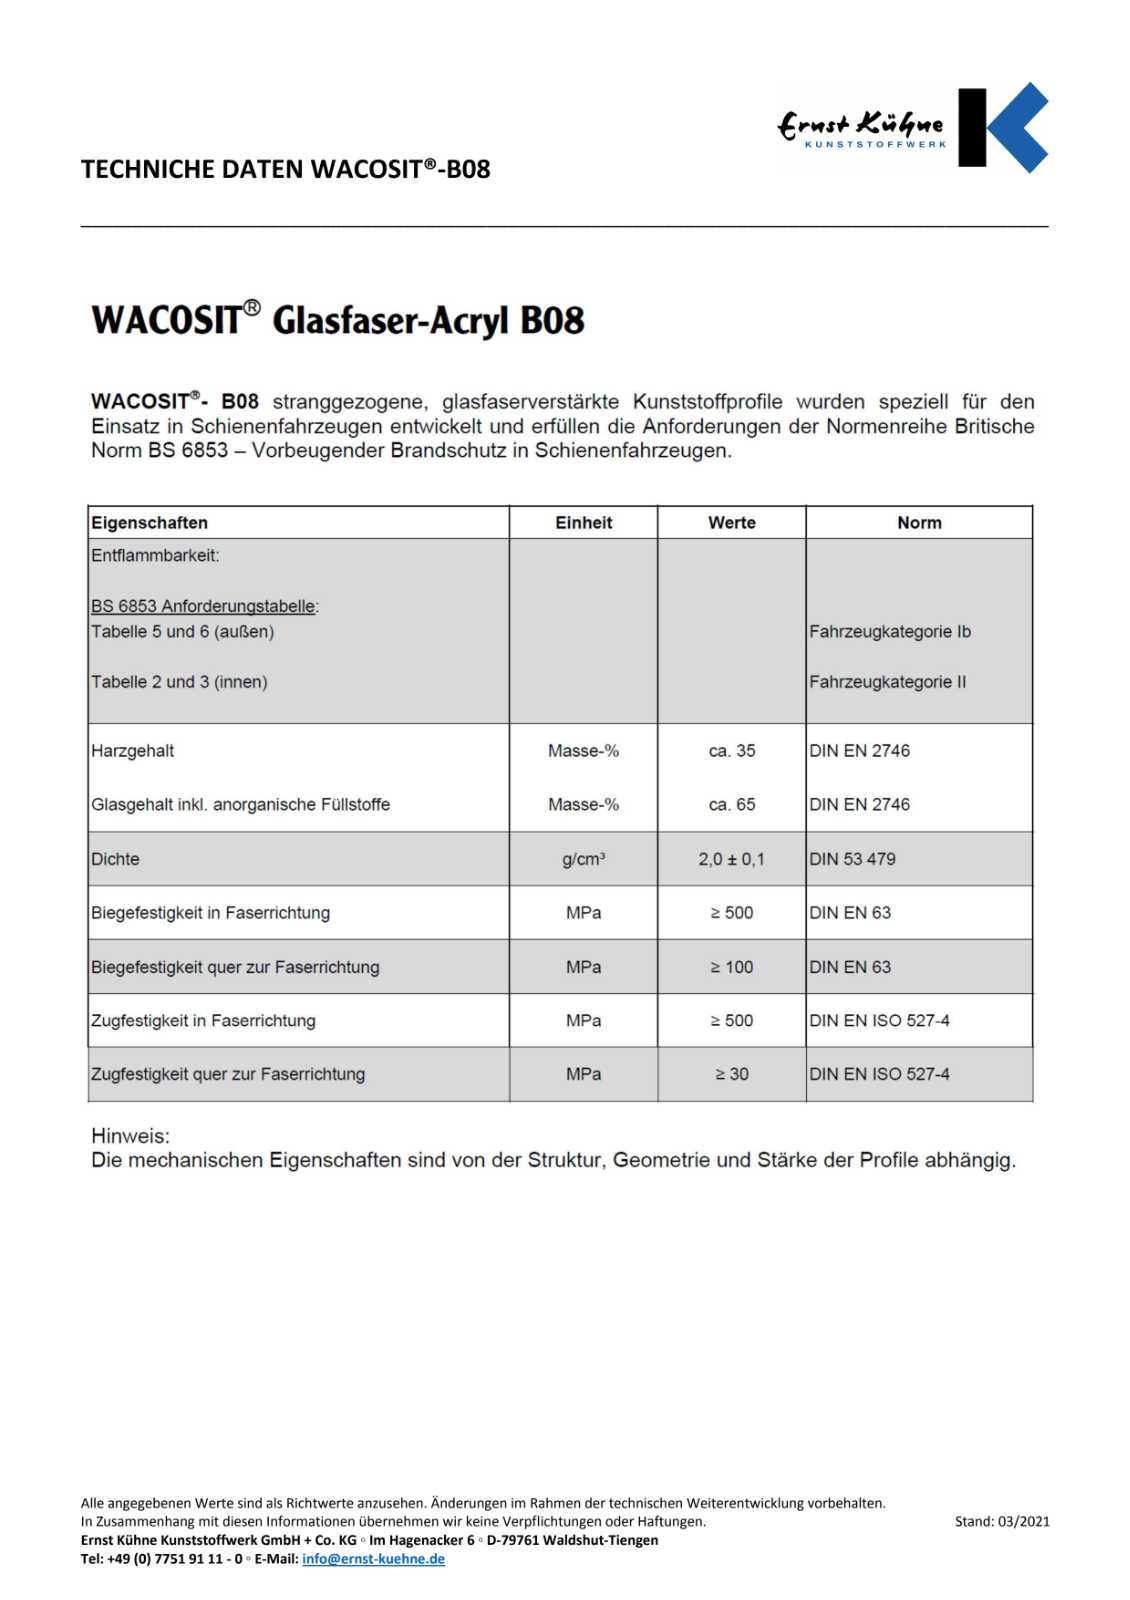 WACOSIT Technische Daten Glasfaser-Acryl B08